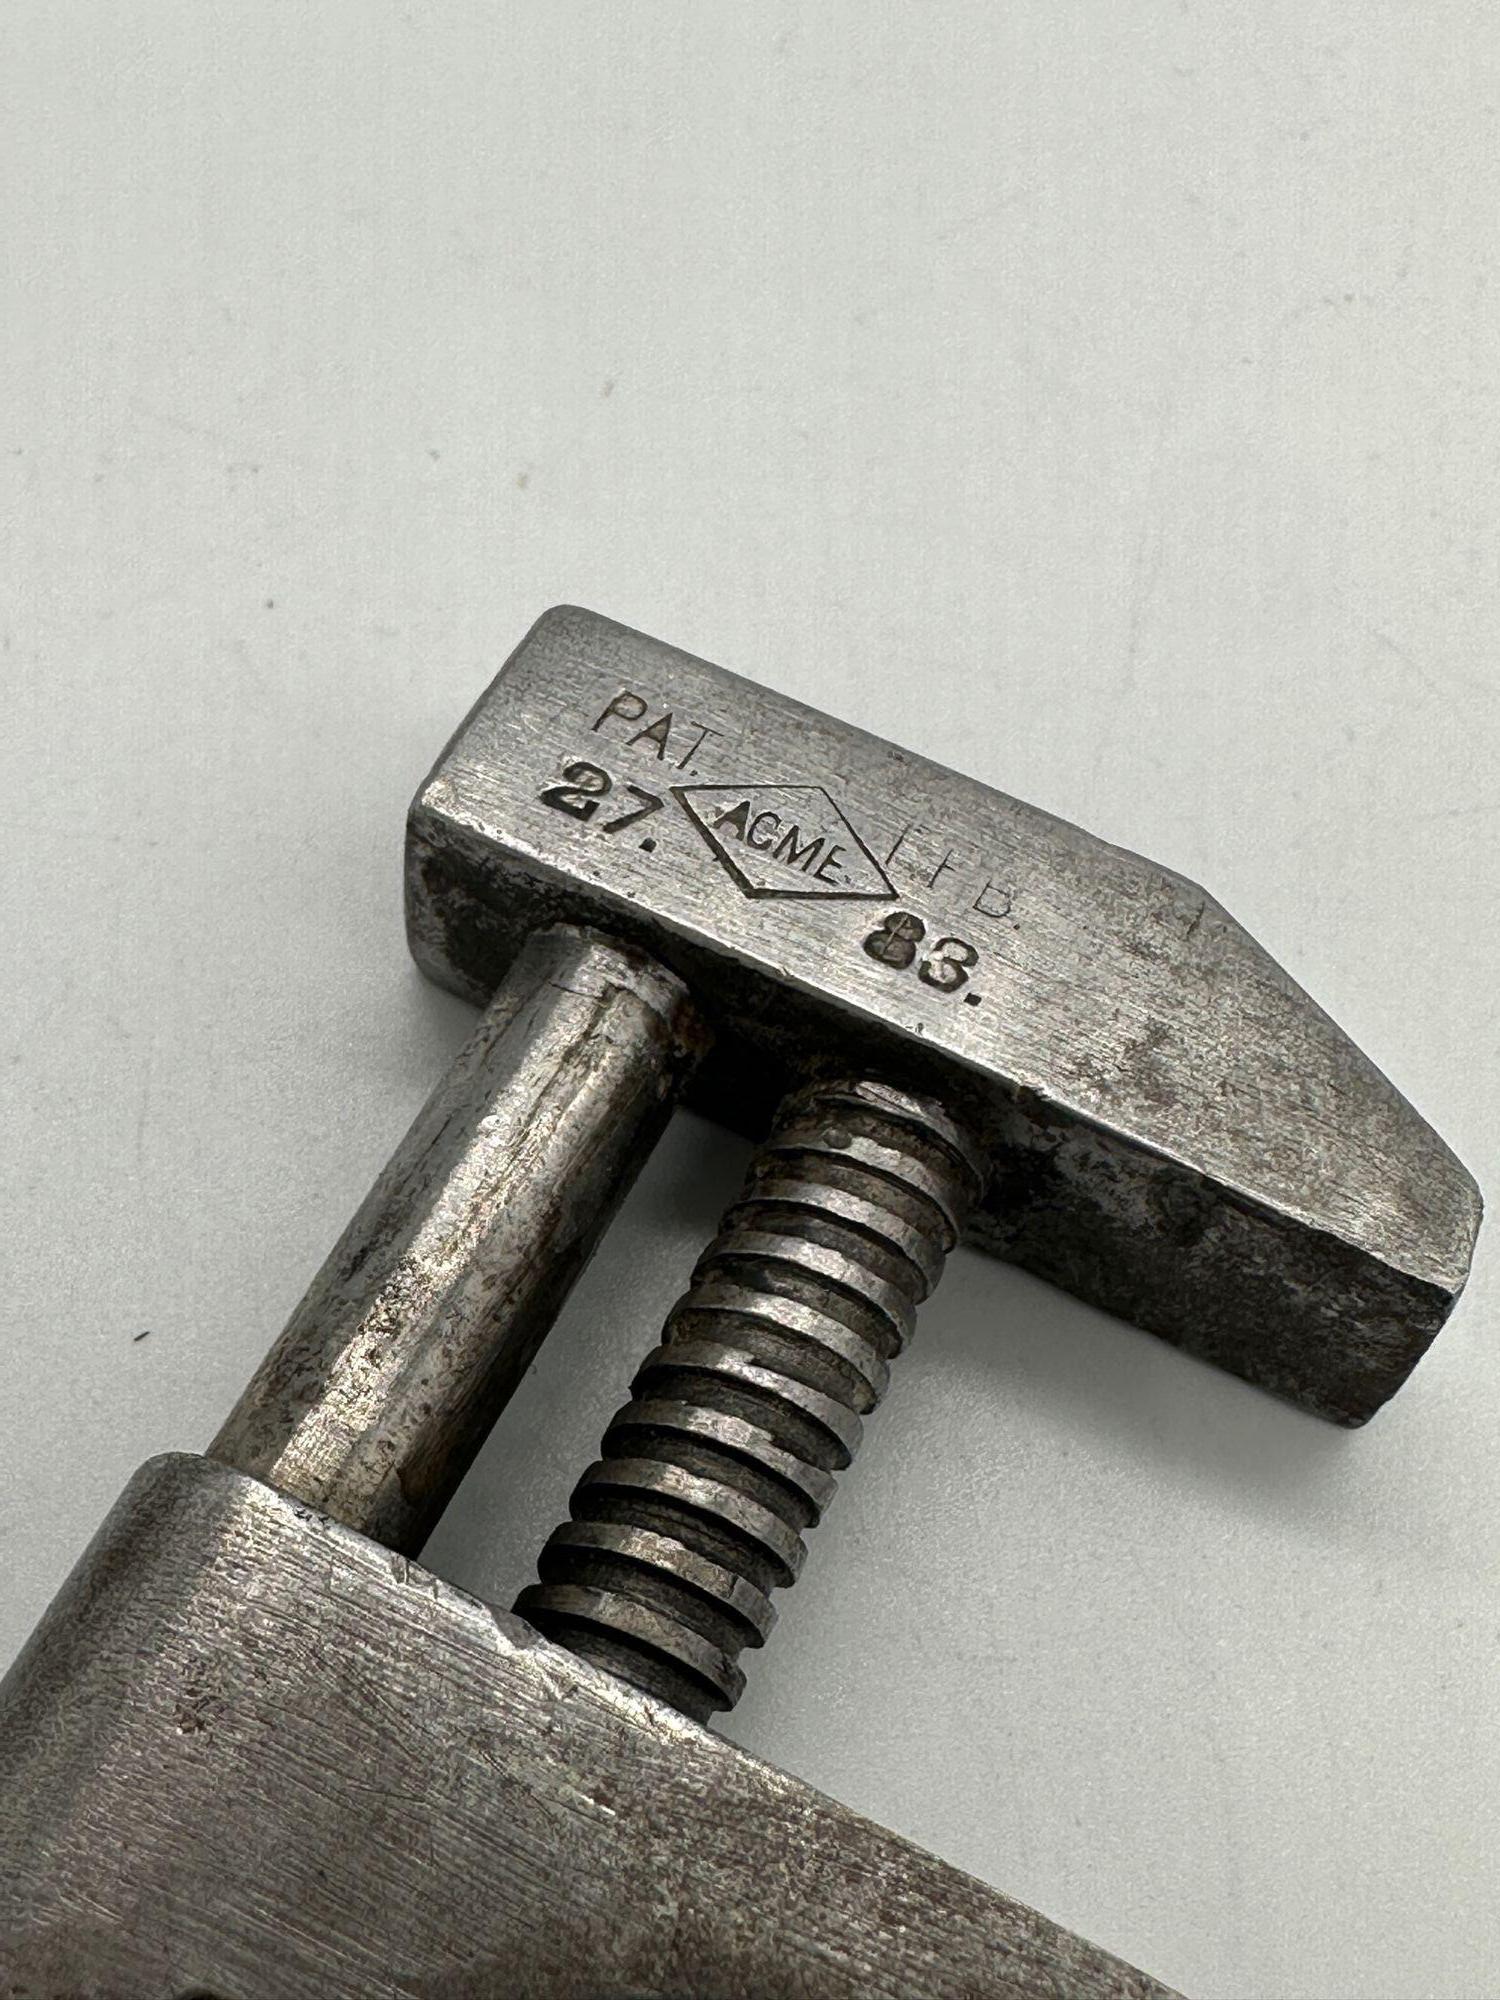 Antica chiave inglese regolabile forgiata Acme da 5 pollici con impugnatura ritorta, brevettata da Frederick Seymour con il numero di brevetto 27.83.

Il manico è costituito da un filo o da un'asta piegata in modo da creare due aste parallele. Una